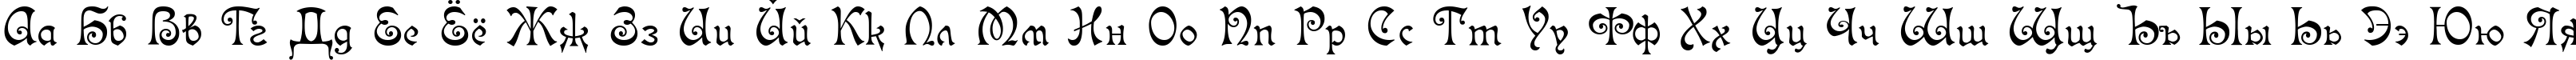 Пример написания русского алфавита шрифтом Isabella-Decor